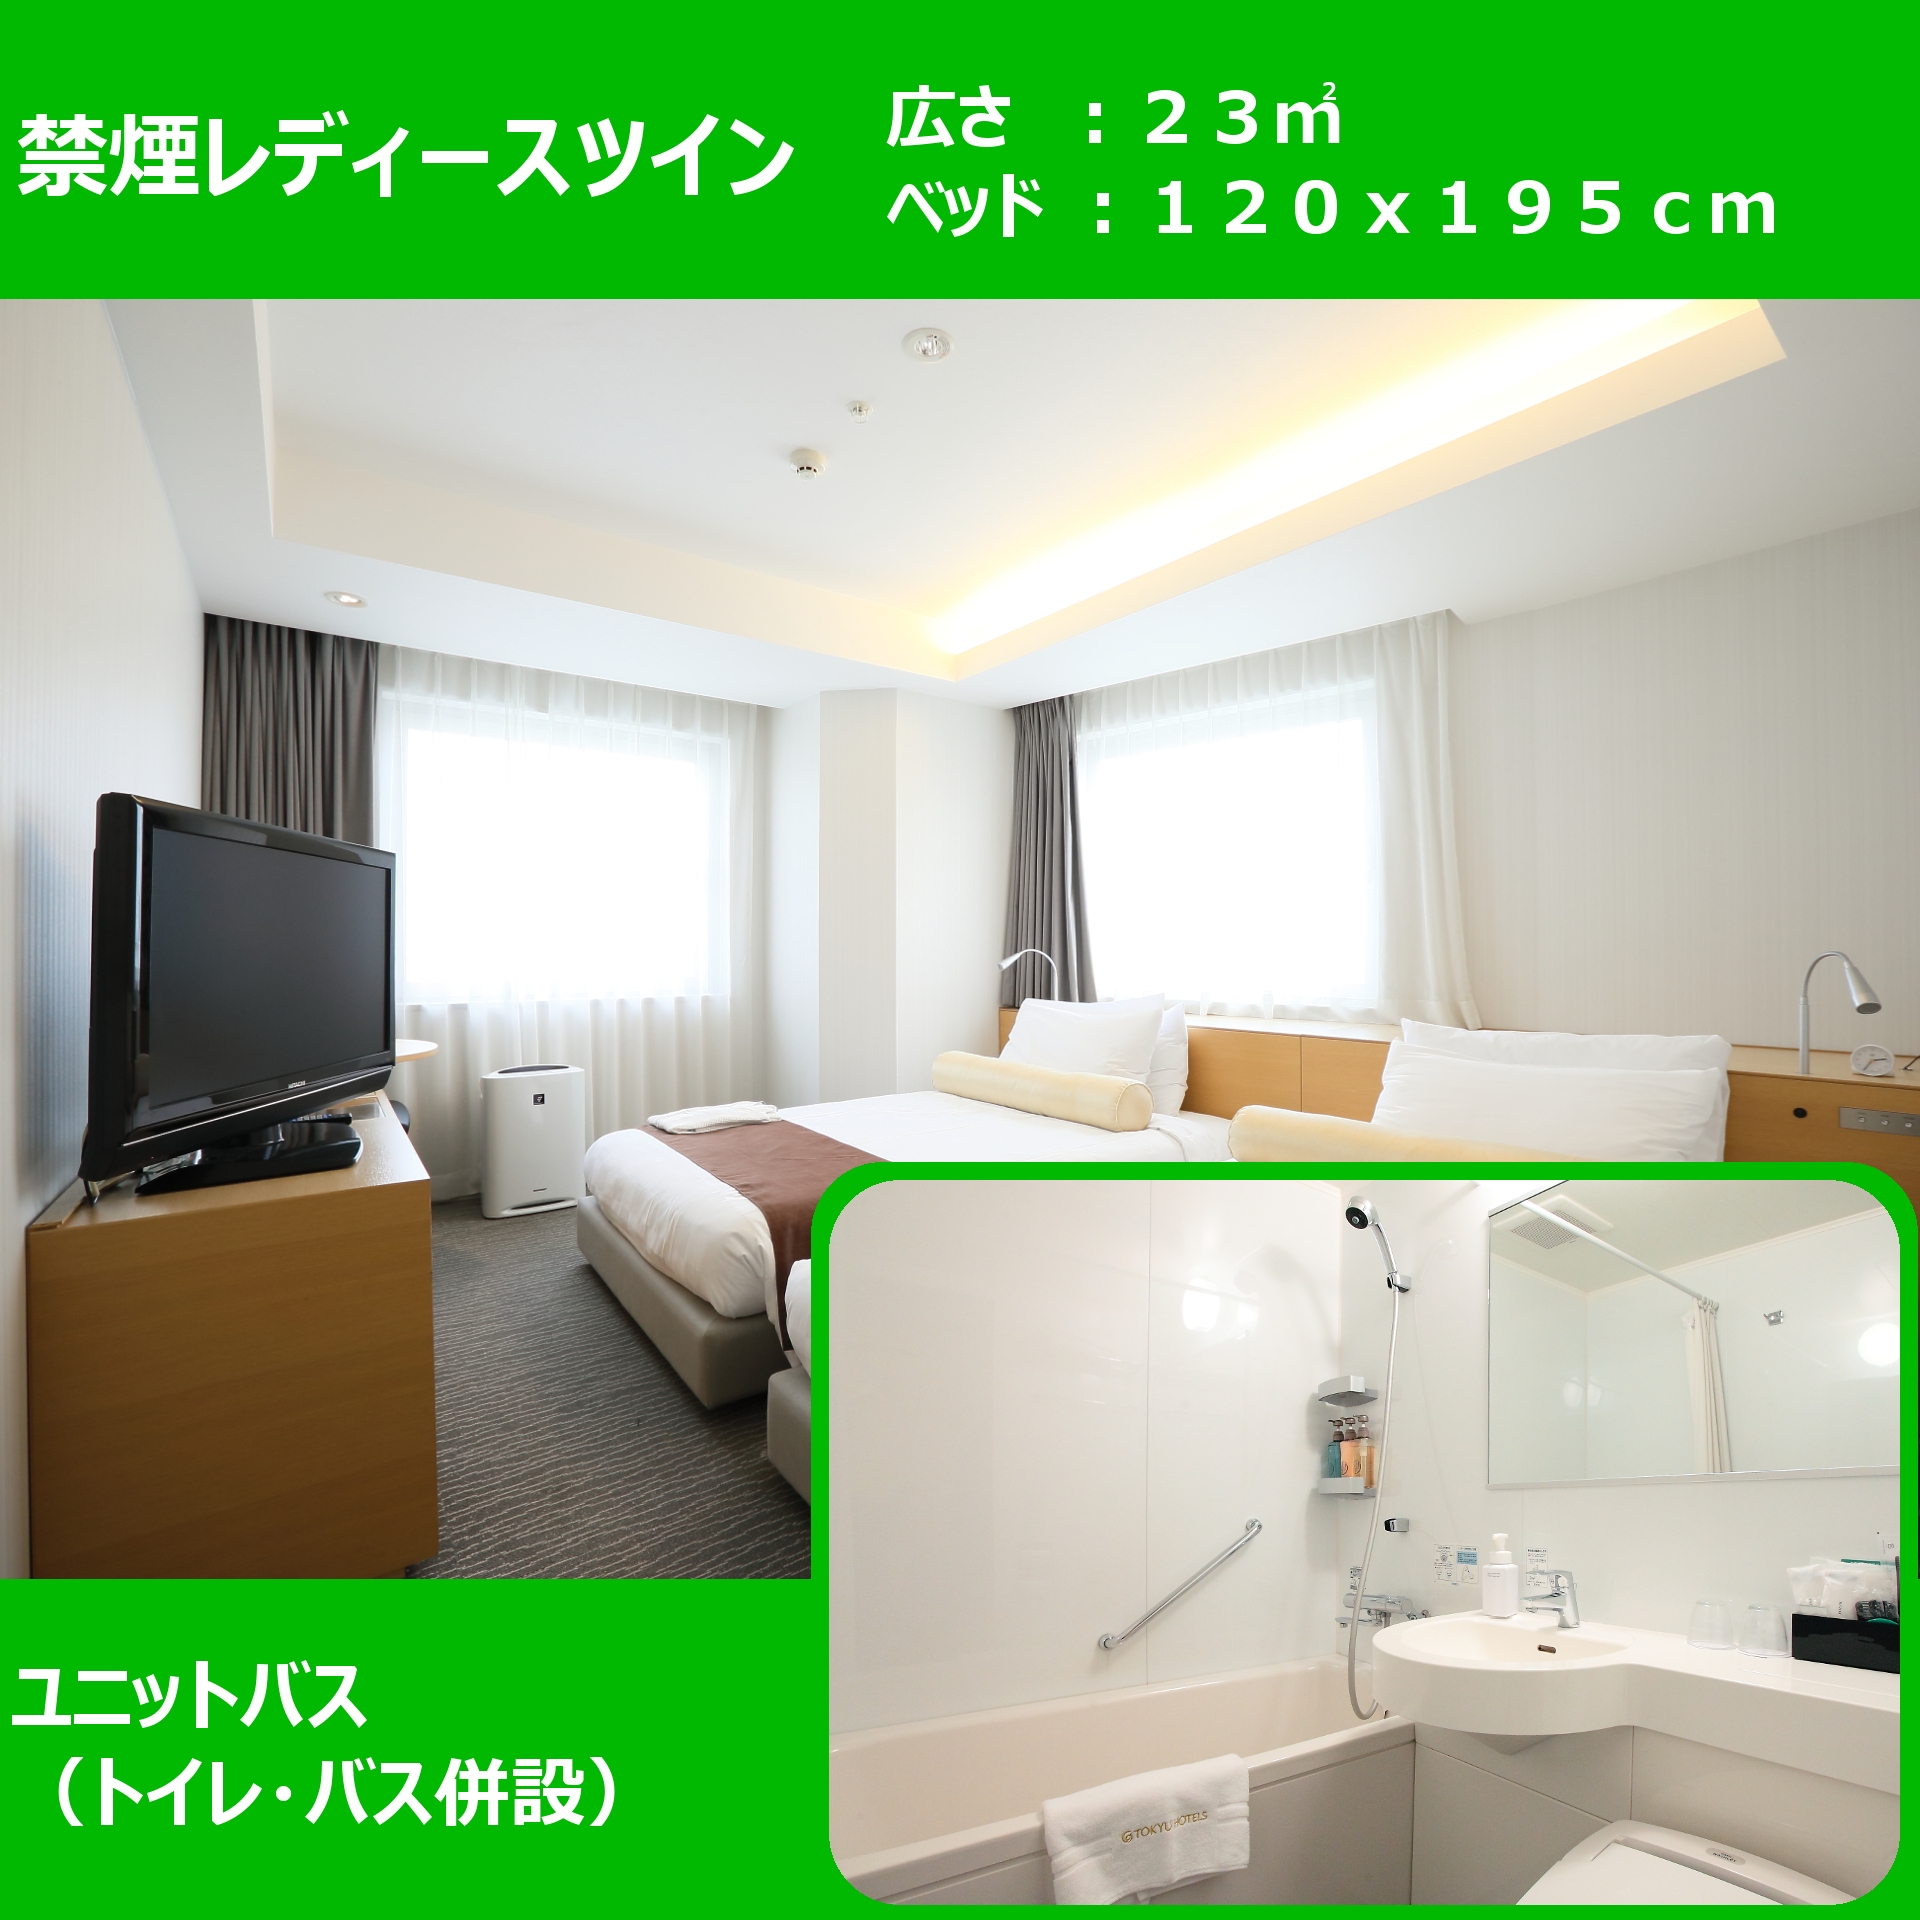 Kamar twin bebas rokok Lantai bertingkat tinggi, lantai khusus wanita 22,6 meter persegi, lebar tempat tidur 120 cm Unit kamar mandi